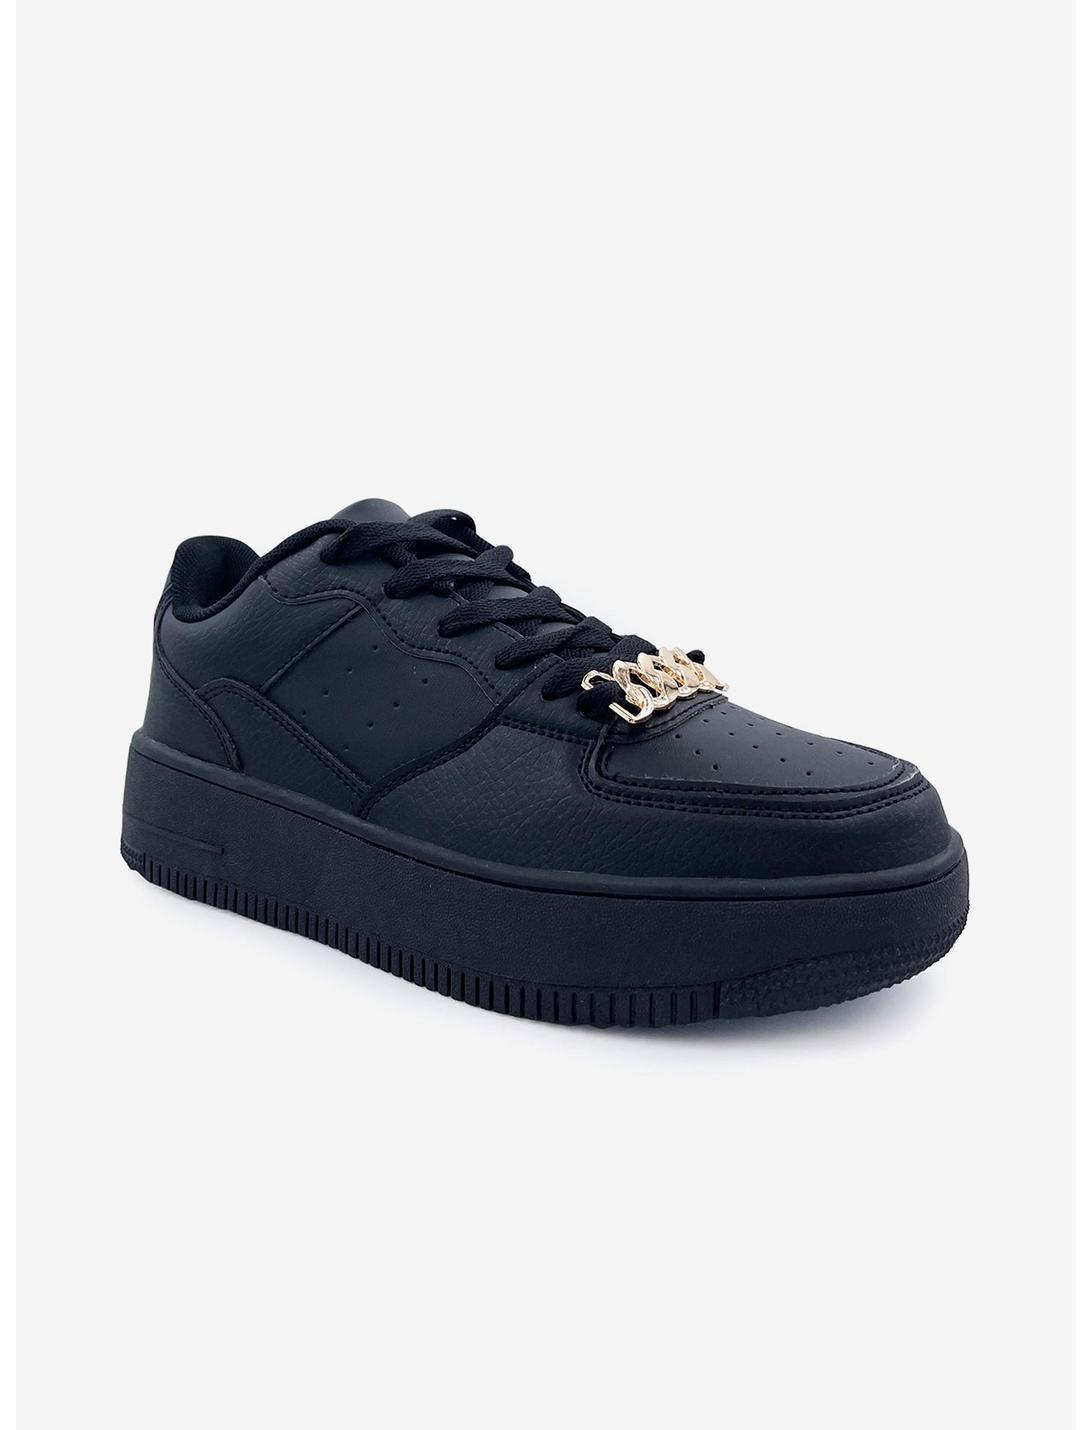 Eden Platform Chain Sneaker Black, BLACK, hi-res